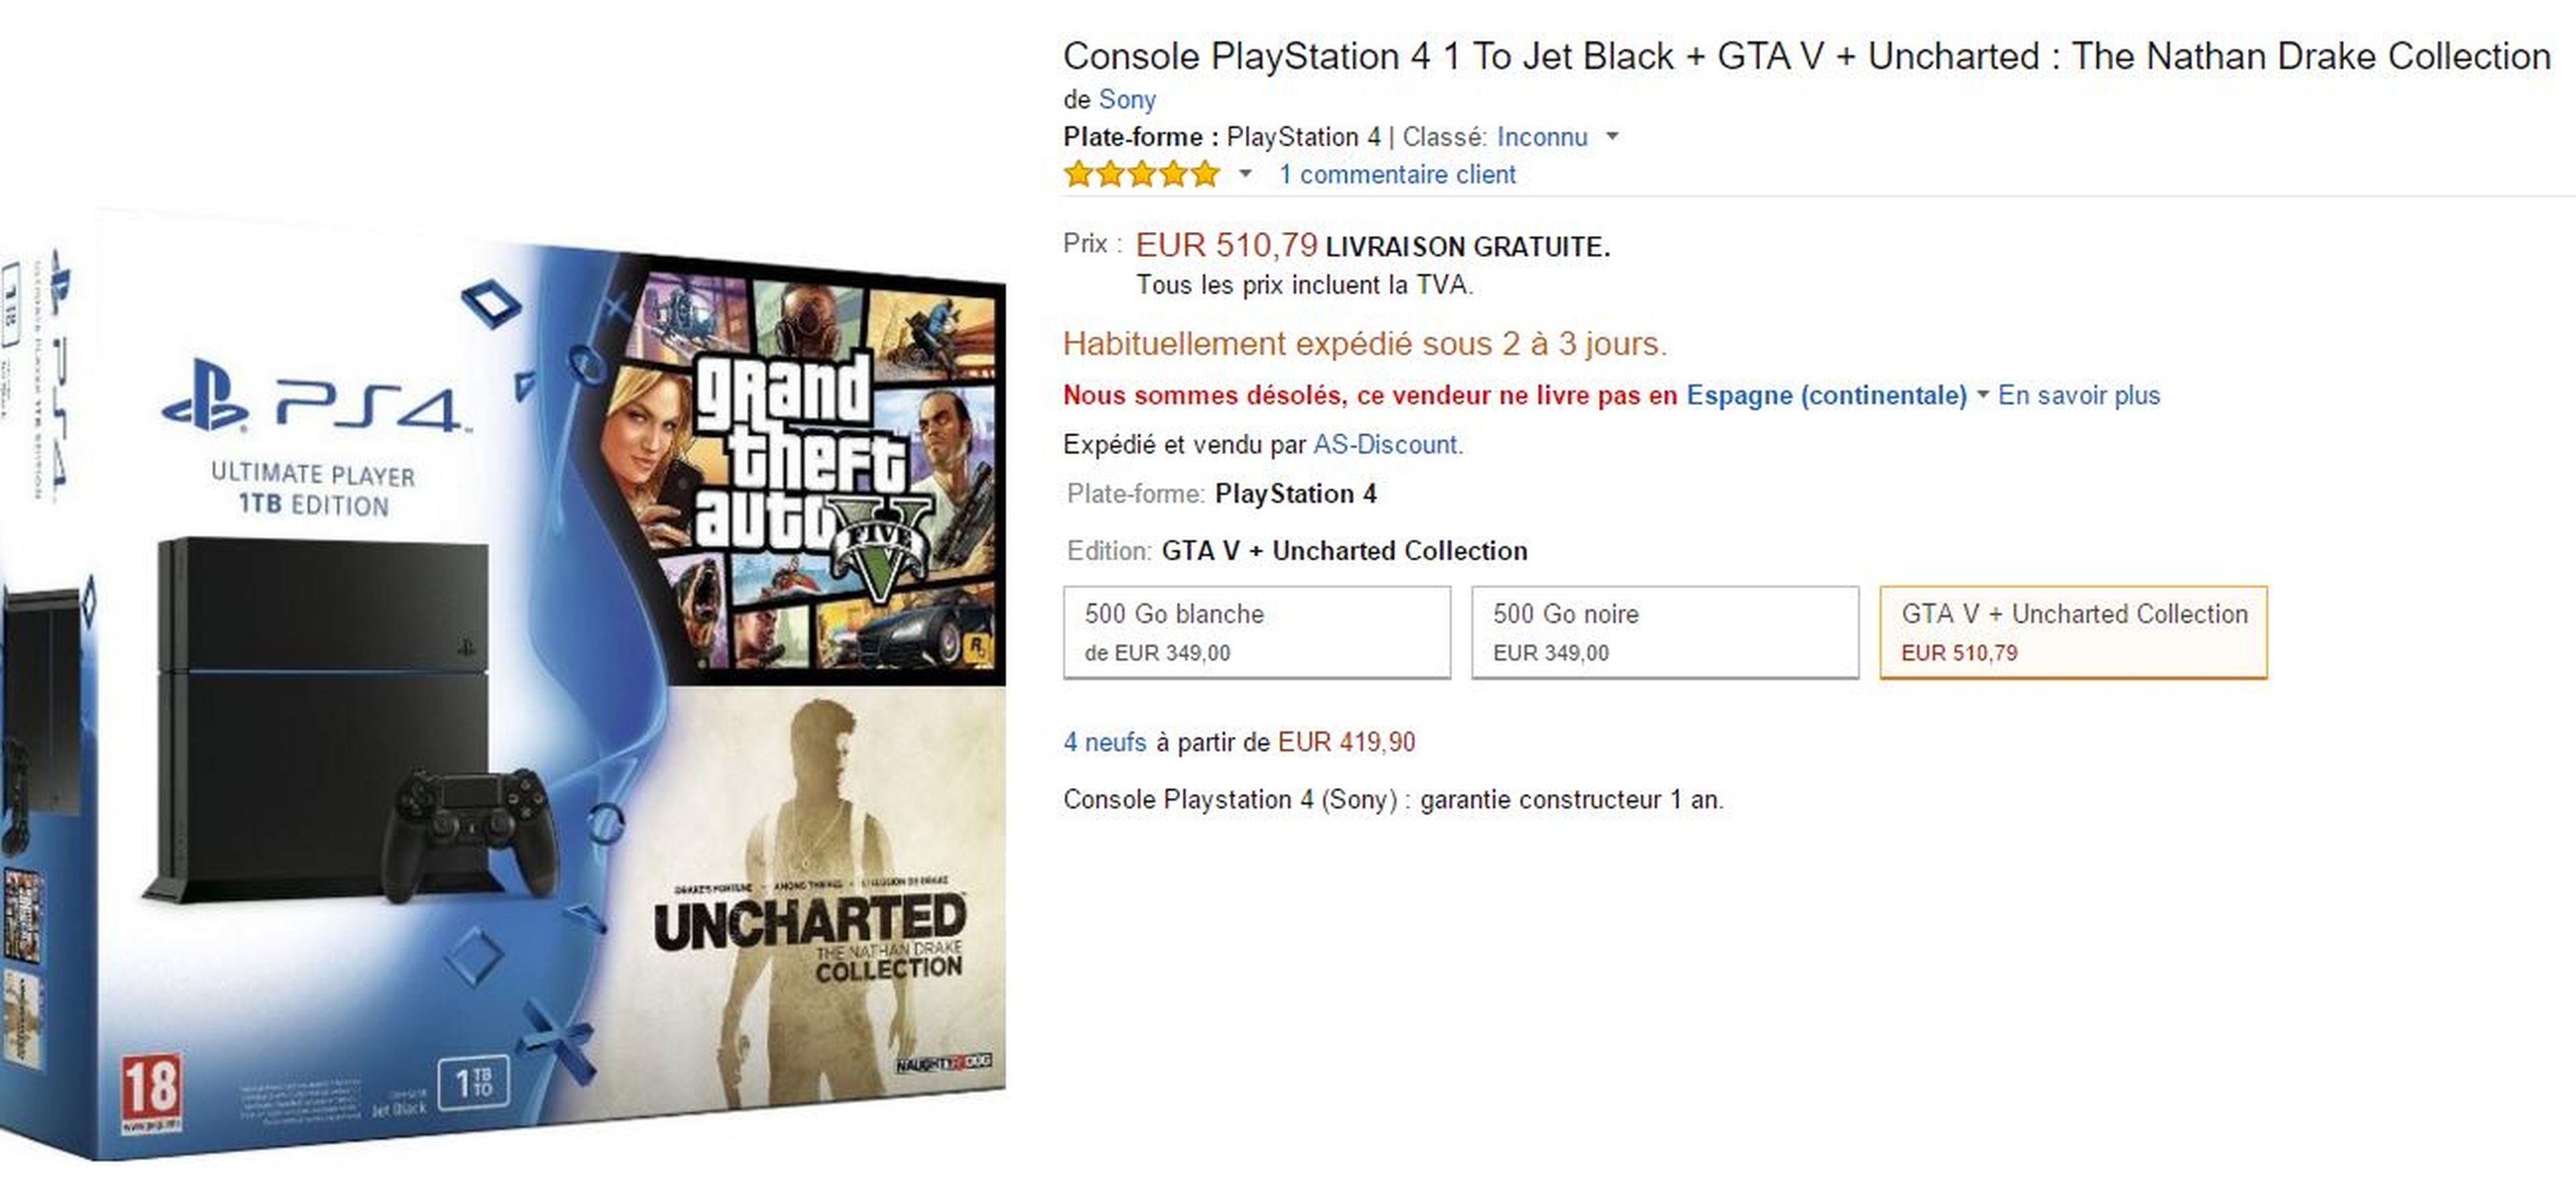 Aparece un nuevo pack PS4 de 1TB con GTA V y Uncharted Collection